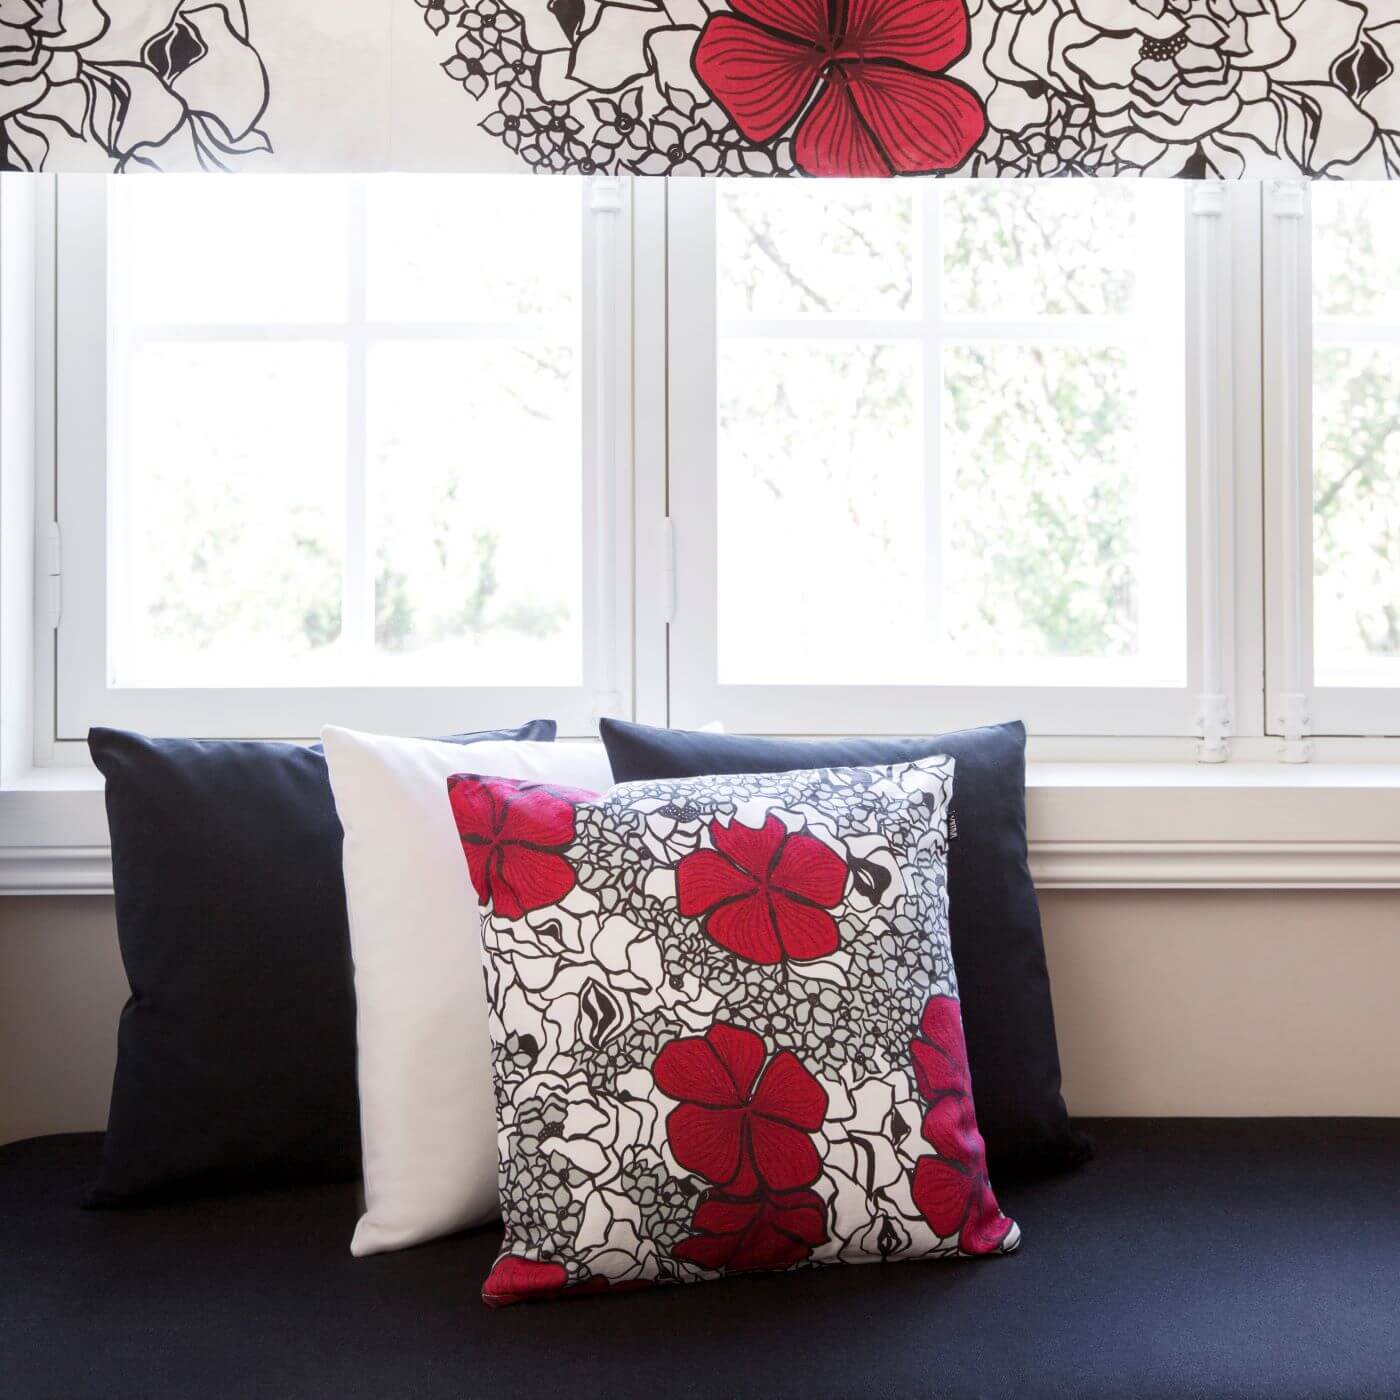 Poduszka dekoracyjna czerwone kwiaty ELLE. Bawełniana poduszka ze wzorem w splecione eleganckie czerwone i drobne szare kwiaty oraz 3 inne poduszki dekoracyjne leżące przy białym oknie. Skandynawski nowoczesny design